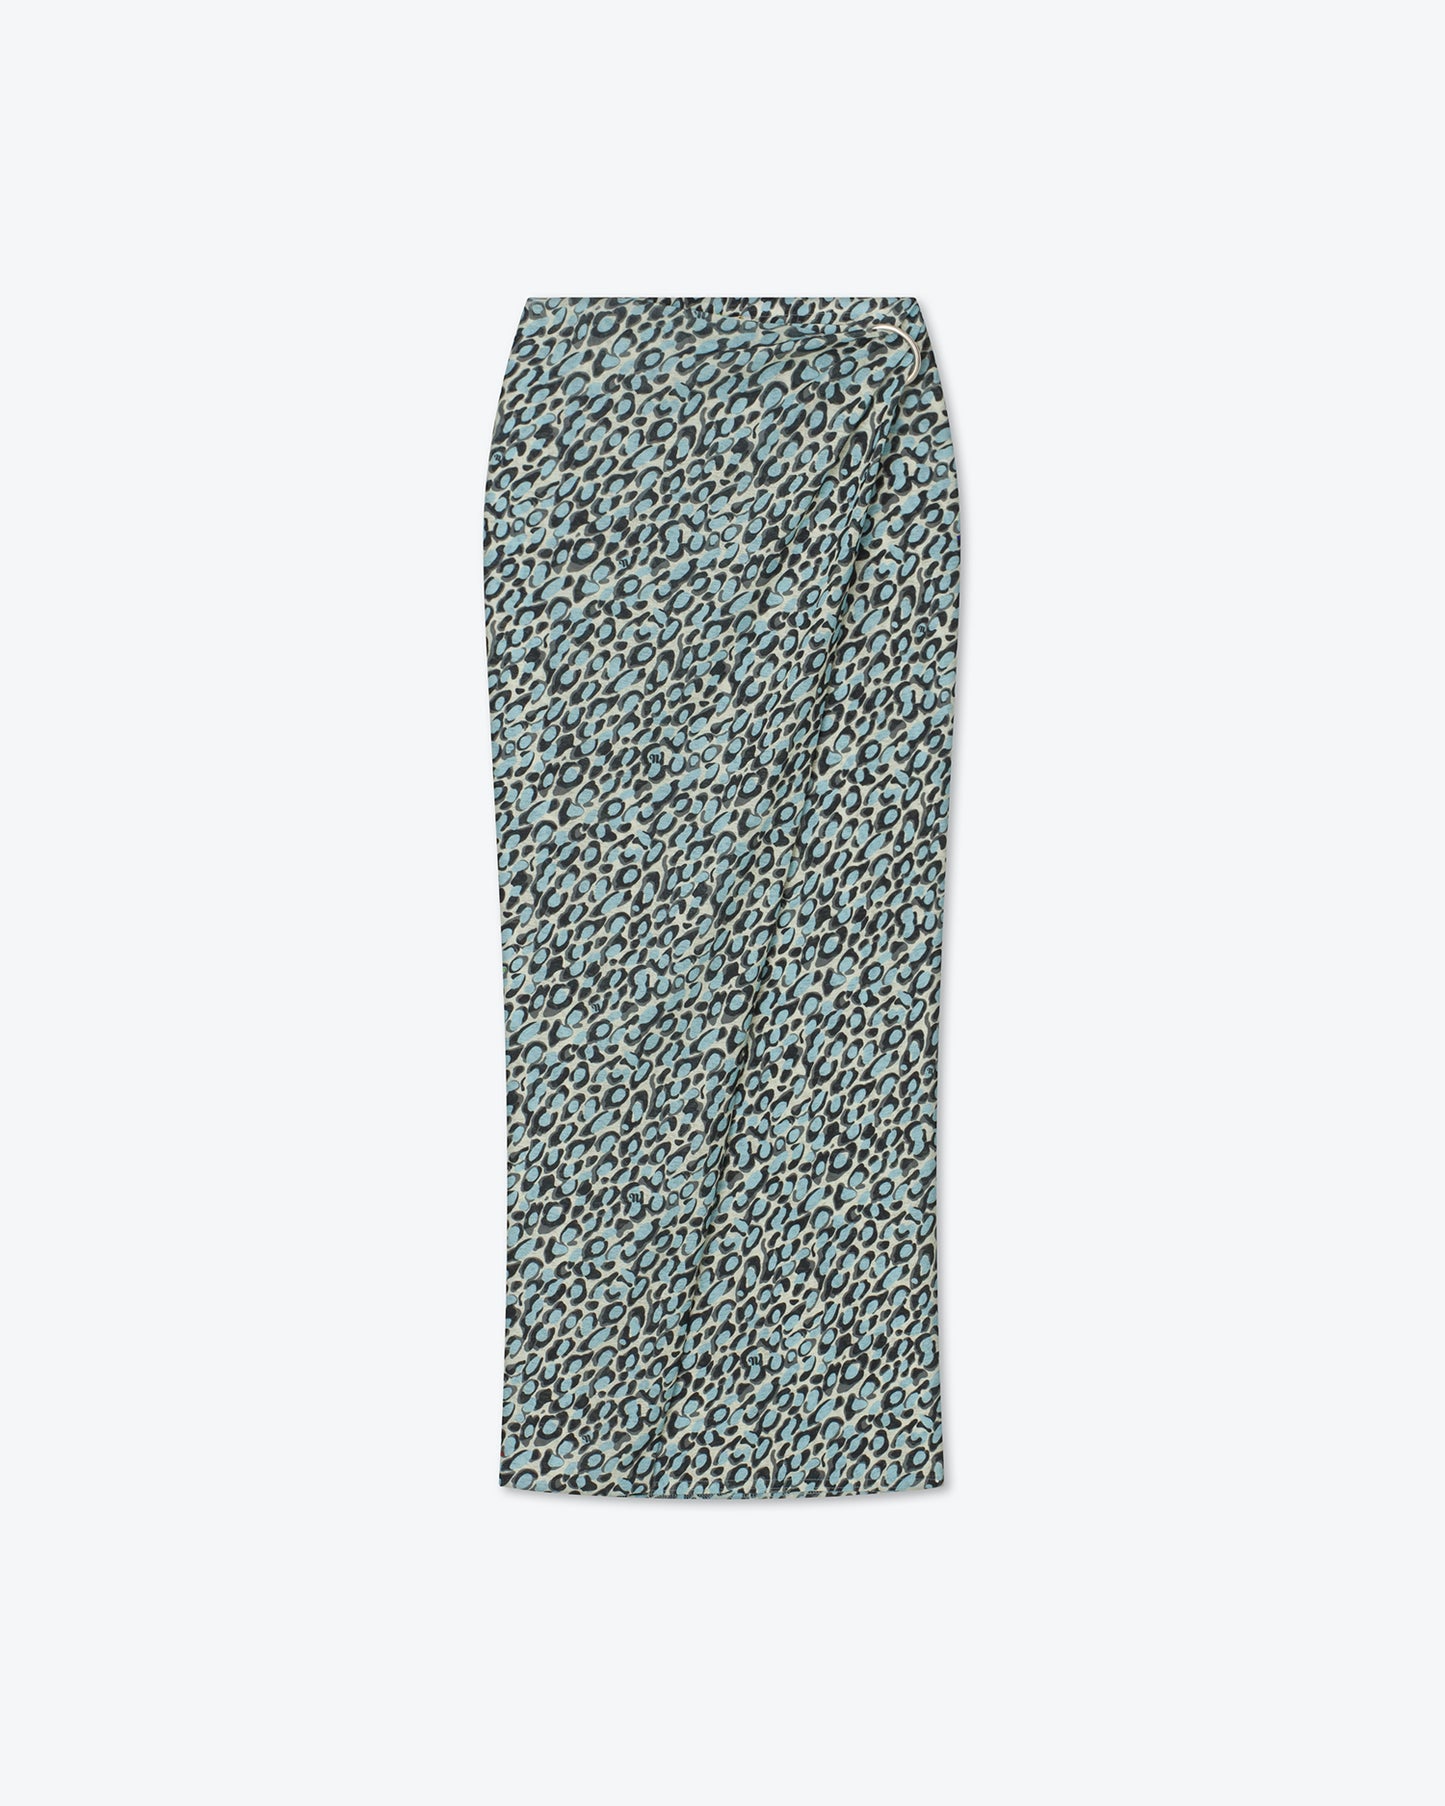 Myrtis - Long Wrap Skirt - Ocelot Sky Blue